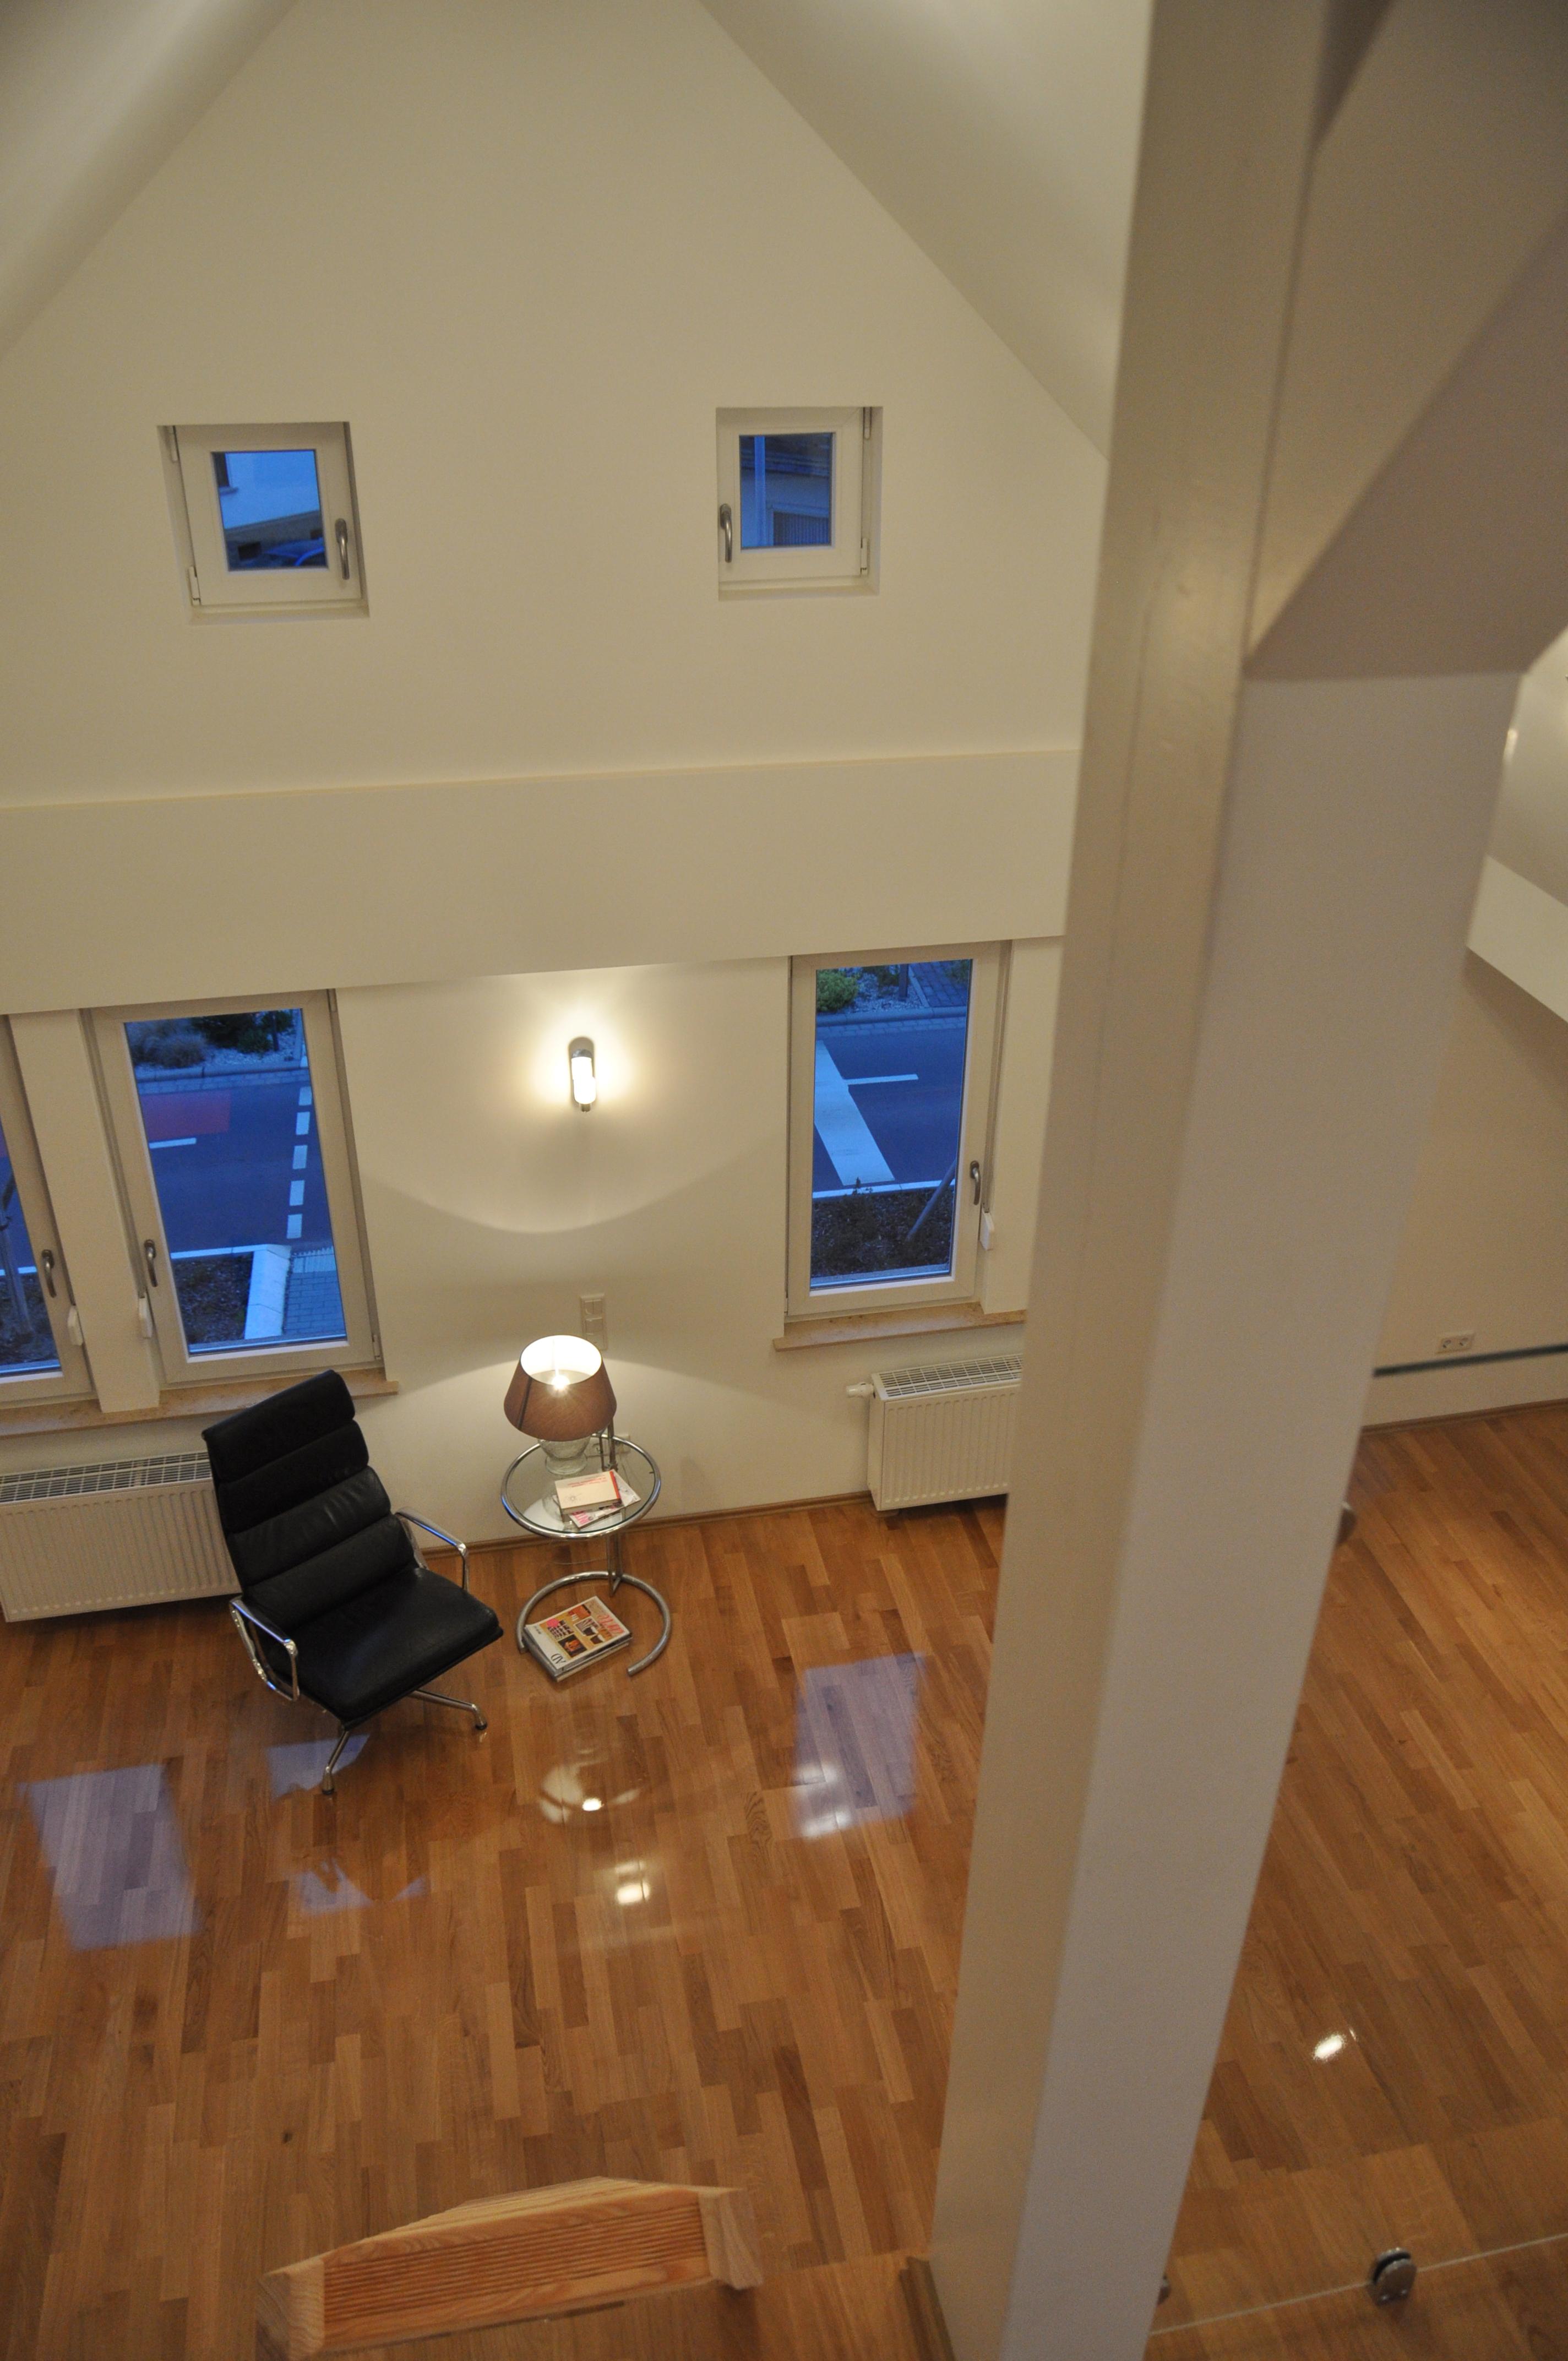 Wohnbereich im Galerie Appartement 70m2 Penthouse zu mieten #dachausbau #kamin #wohnzimmer #loft #galerie ©Tatjana Adelt